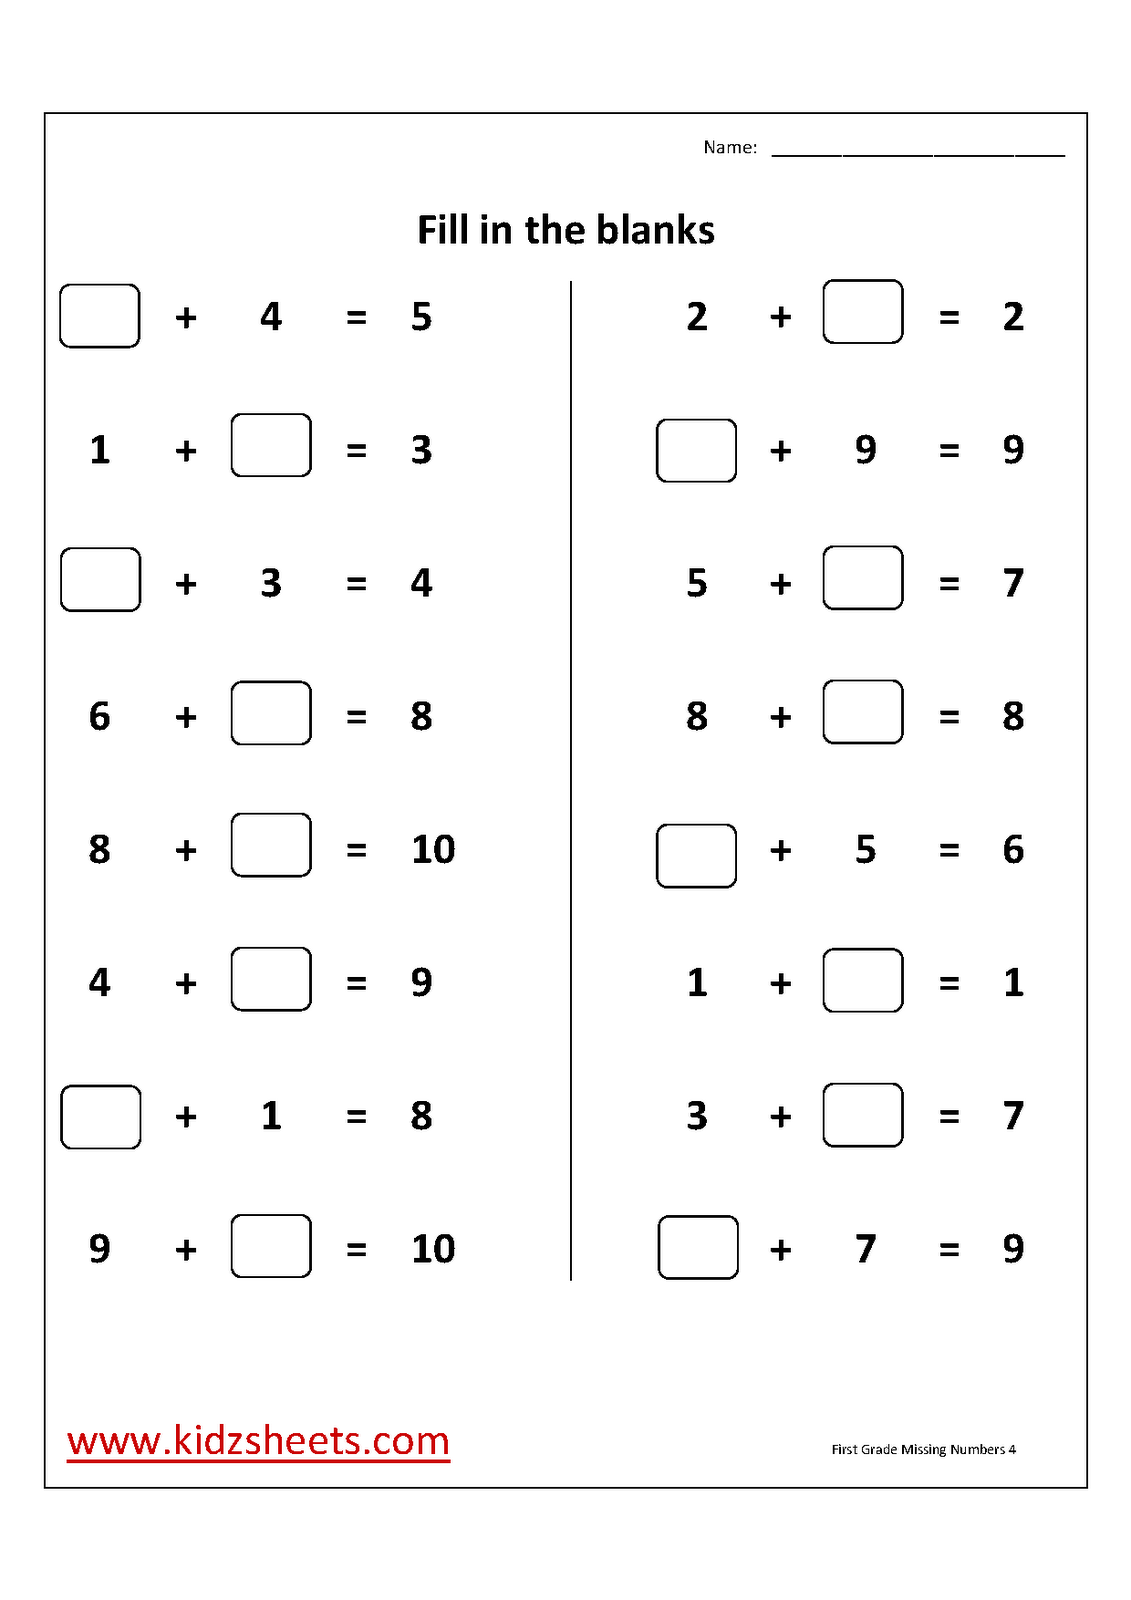 17 Images of Missing Number Worksheets Kindergarten Grade